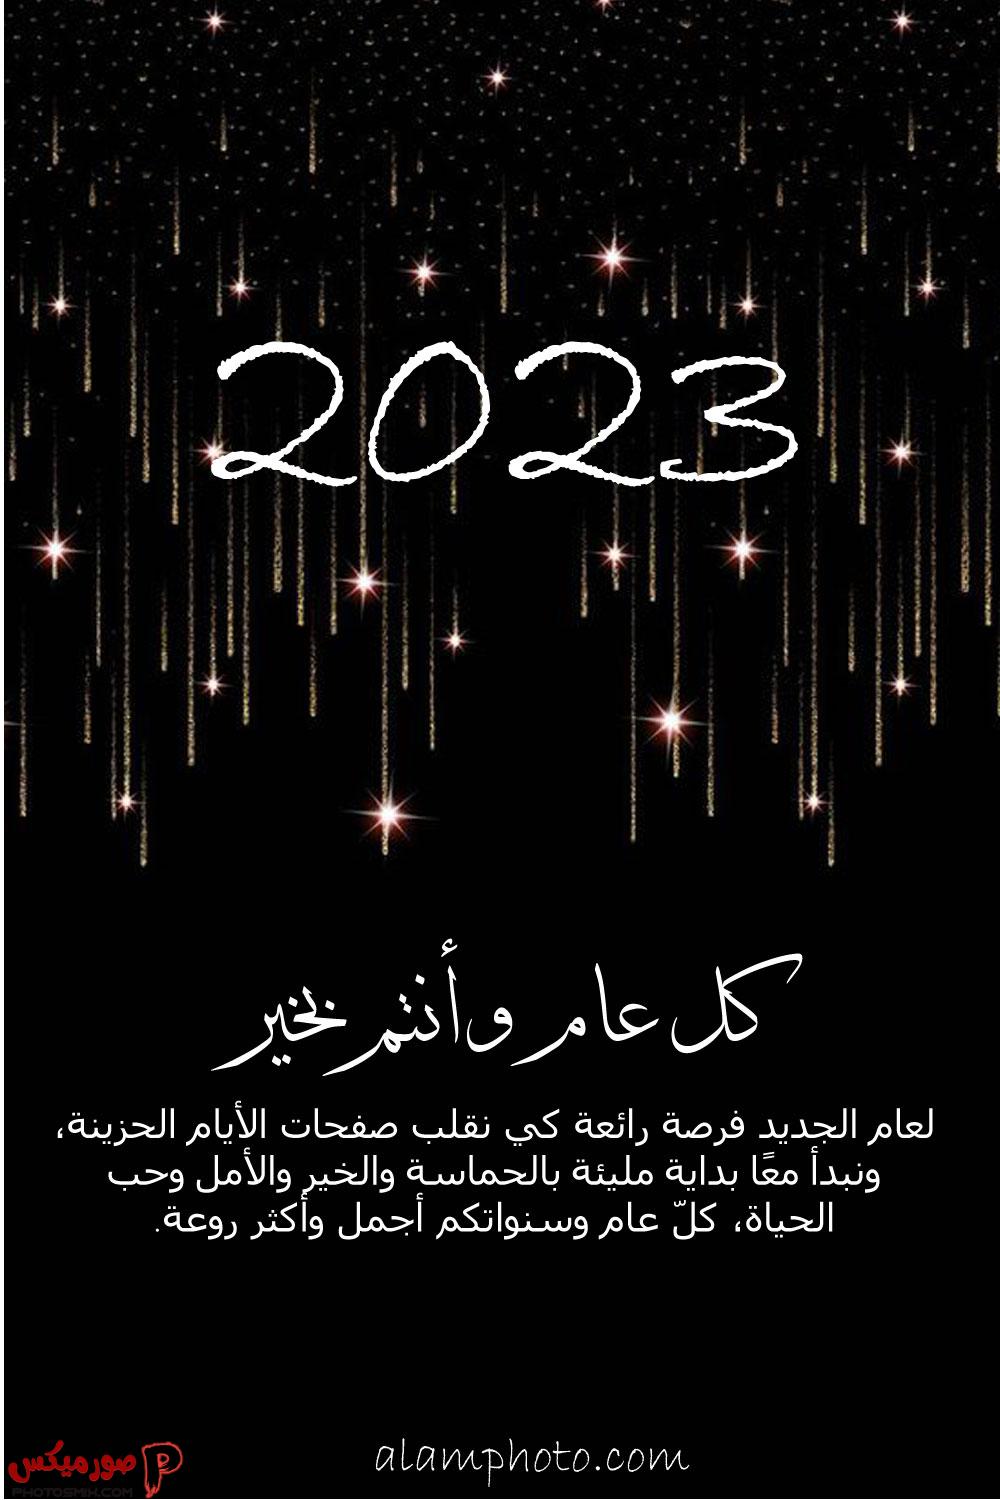 العام الجديد 2023 1